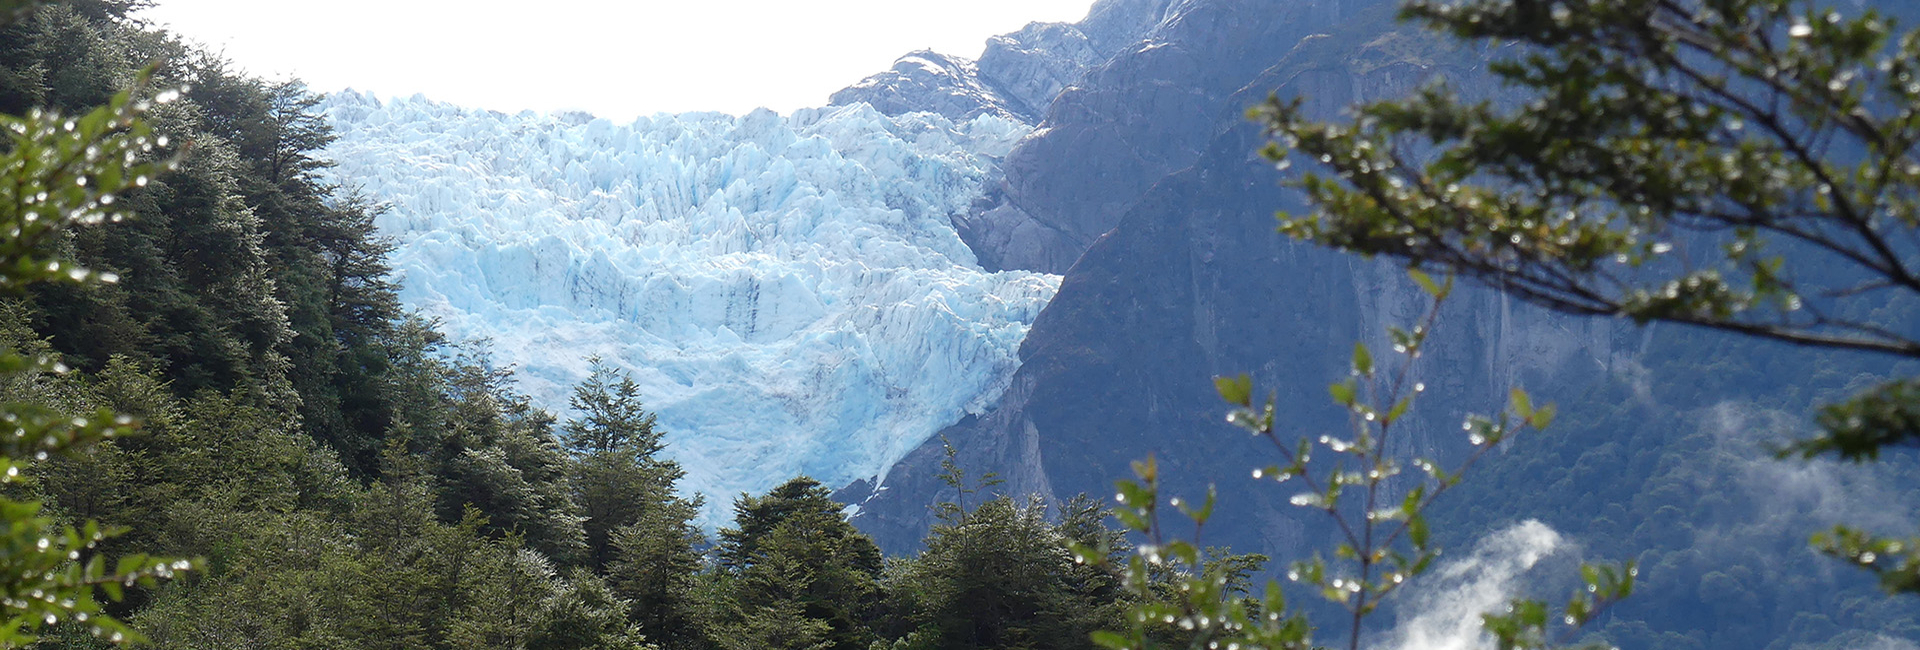 Queulat Glacier - Northern Patagonia